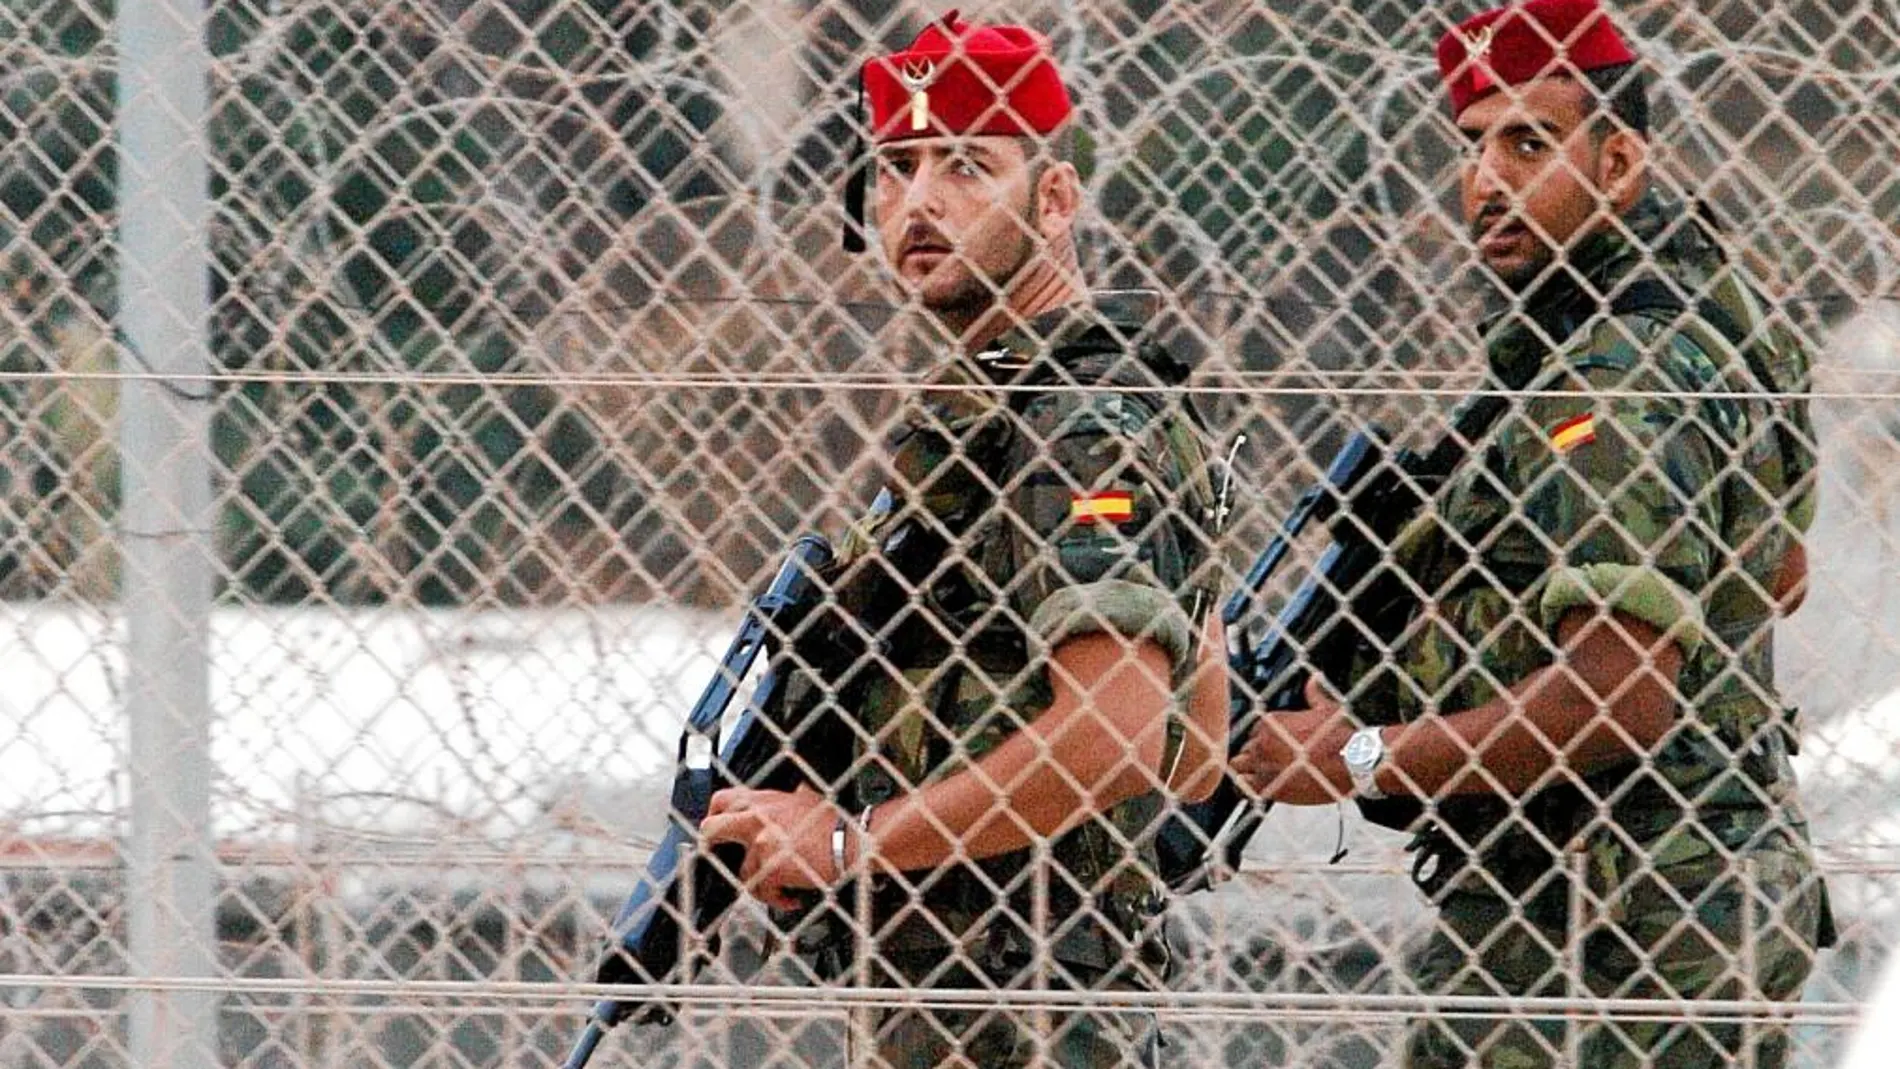 Militares de las Fuerzas Regulares operan desplegados en el interior de la doble valla del perímetro fronterizo de Ceuta, que separa España de Marruecos